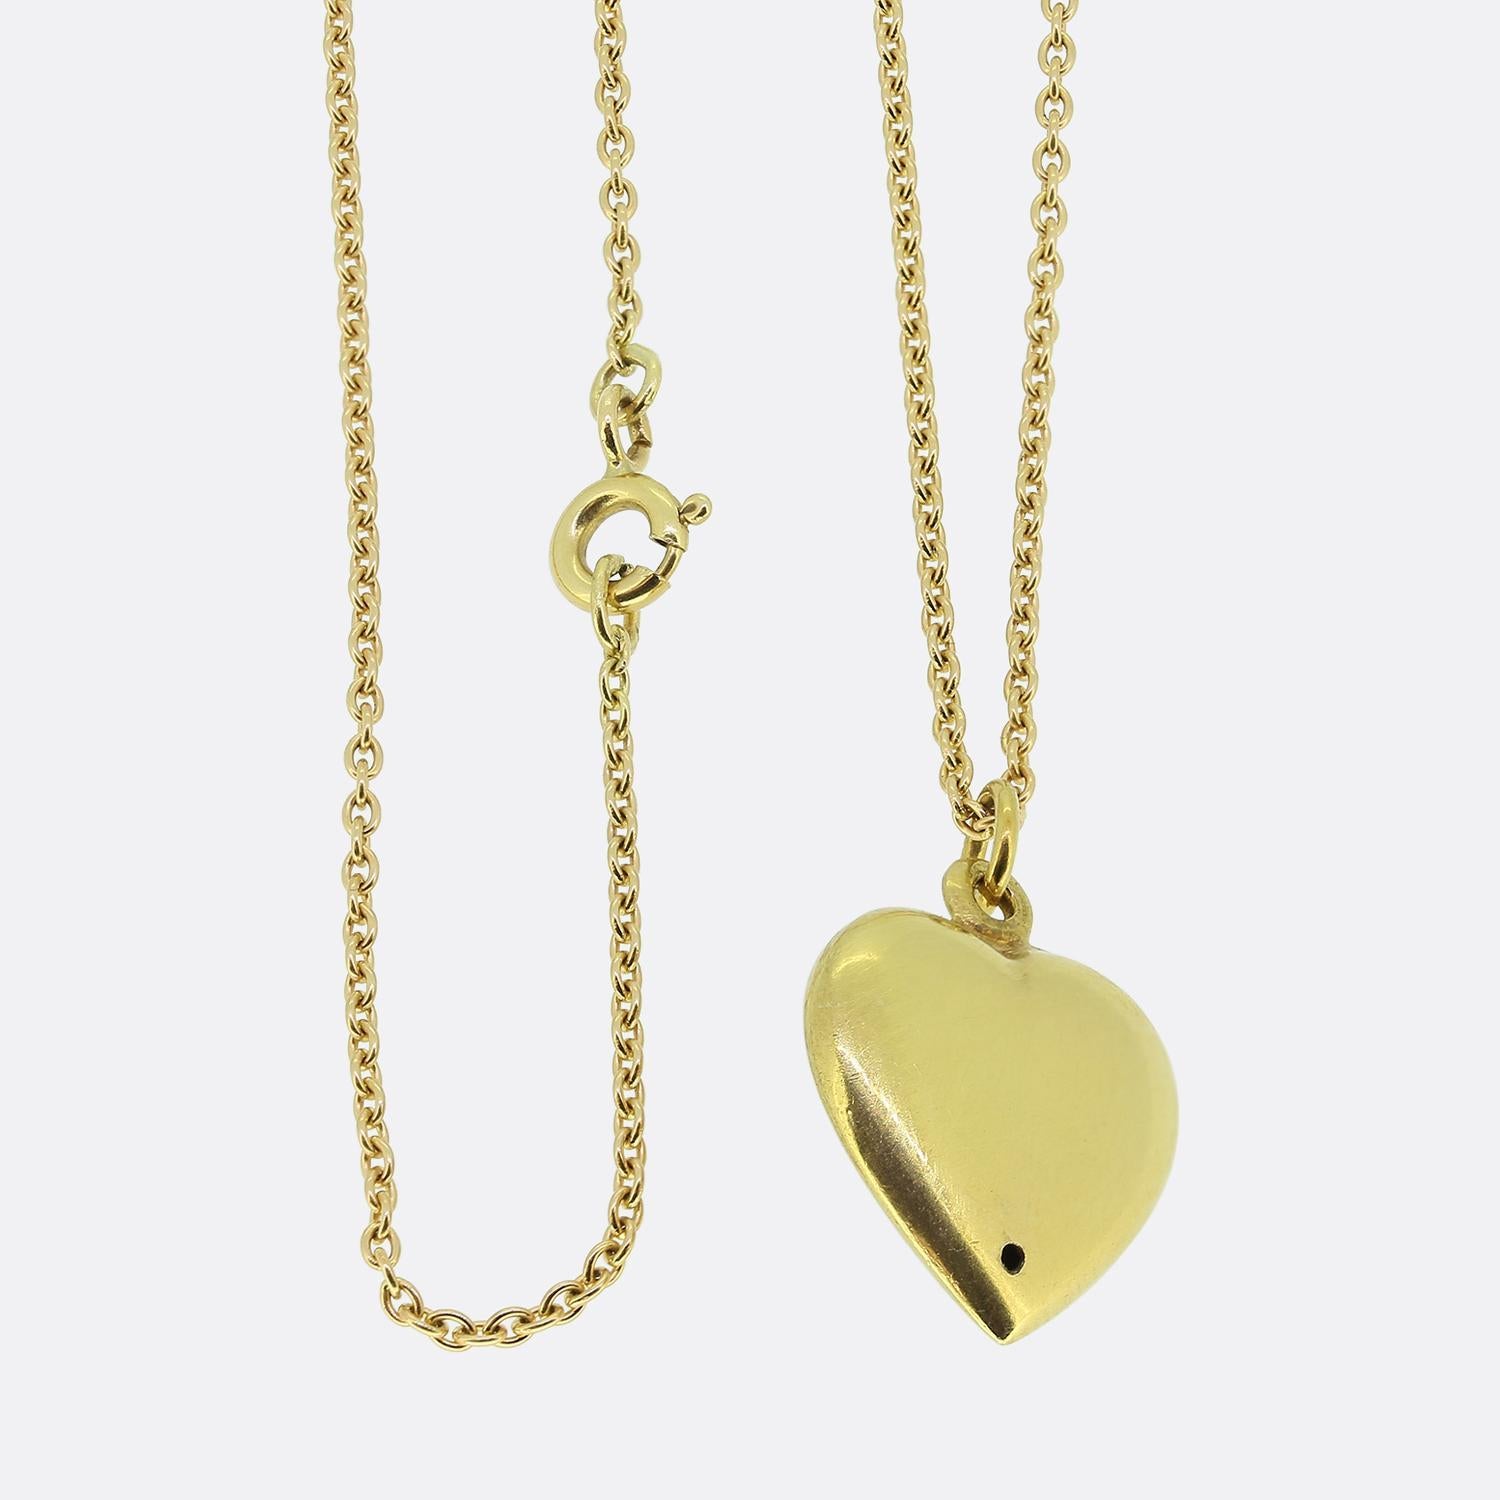 Nous avons ici un magnifique collier à pendentifs en perles. Ce pendentif antique en or jaune 18 ct a été façonné en forme de petit cœur d'amour et serti de manière experte d'un ensemble de perles rondes naturelles en formation florale. Ce motif se